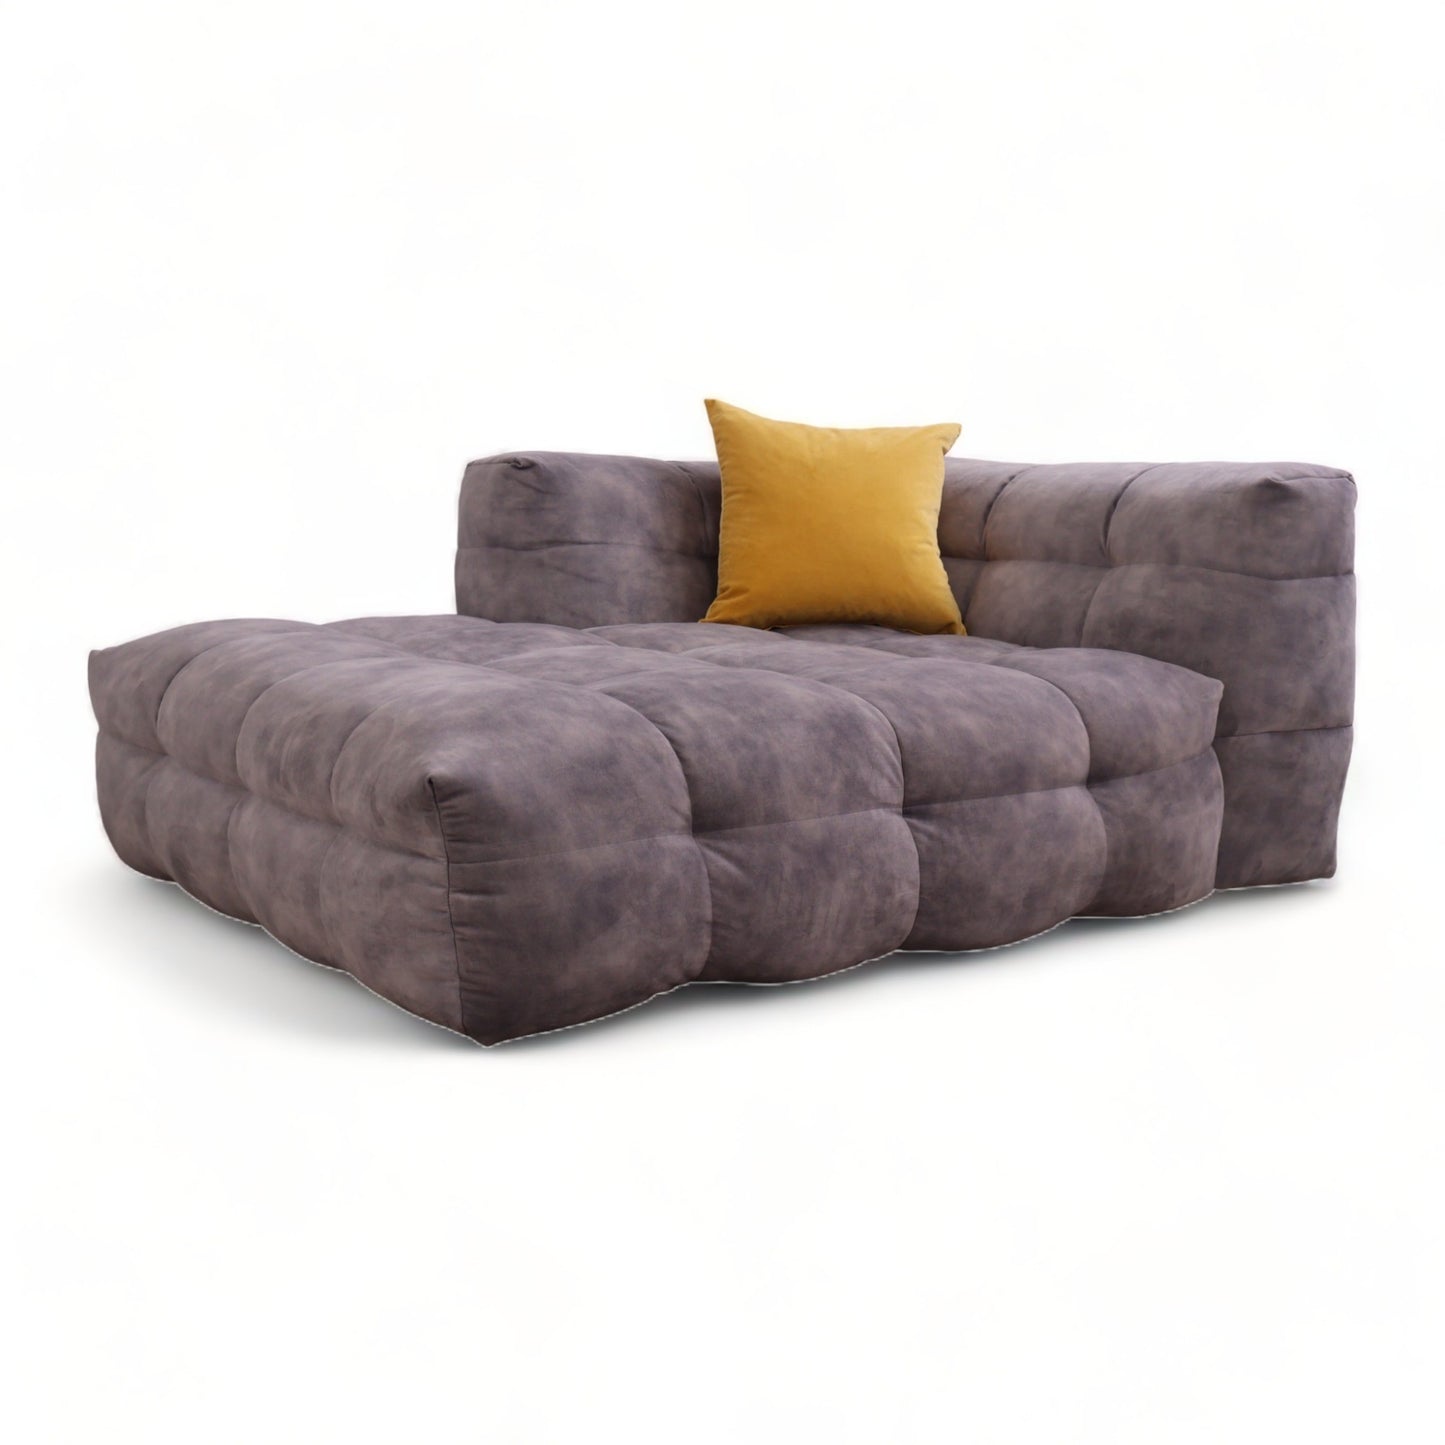 Ubrukt | Lys grå Michelin Canape sofa i velur